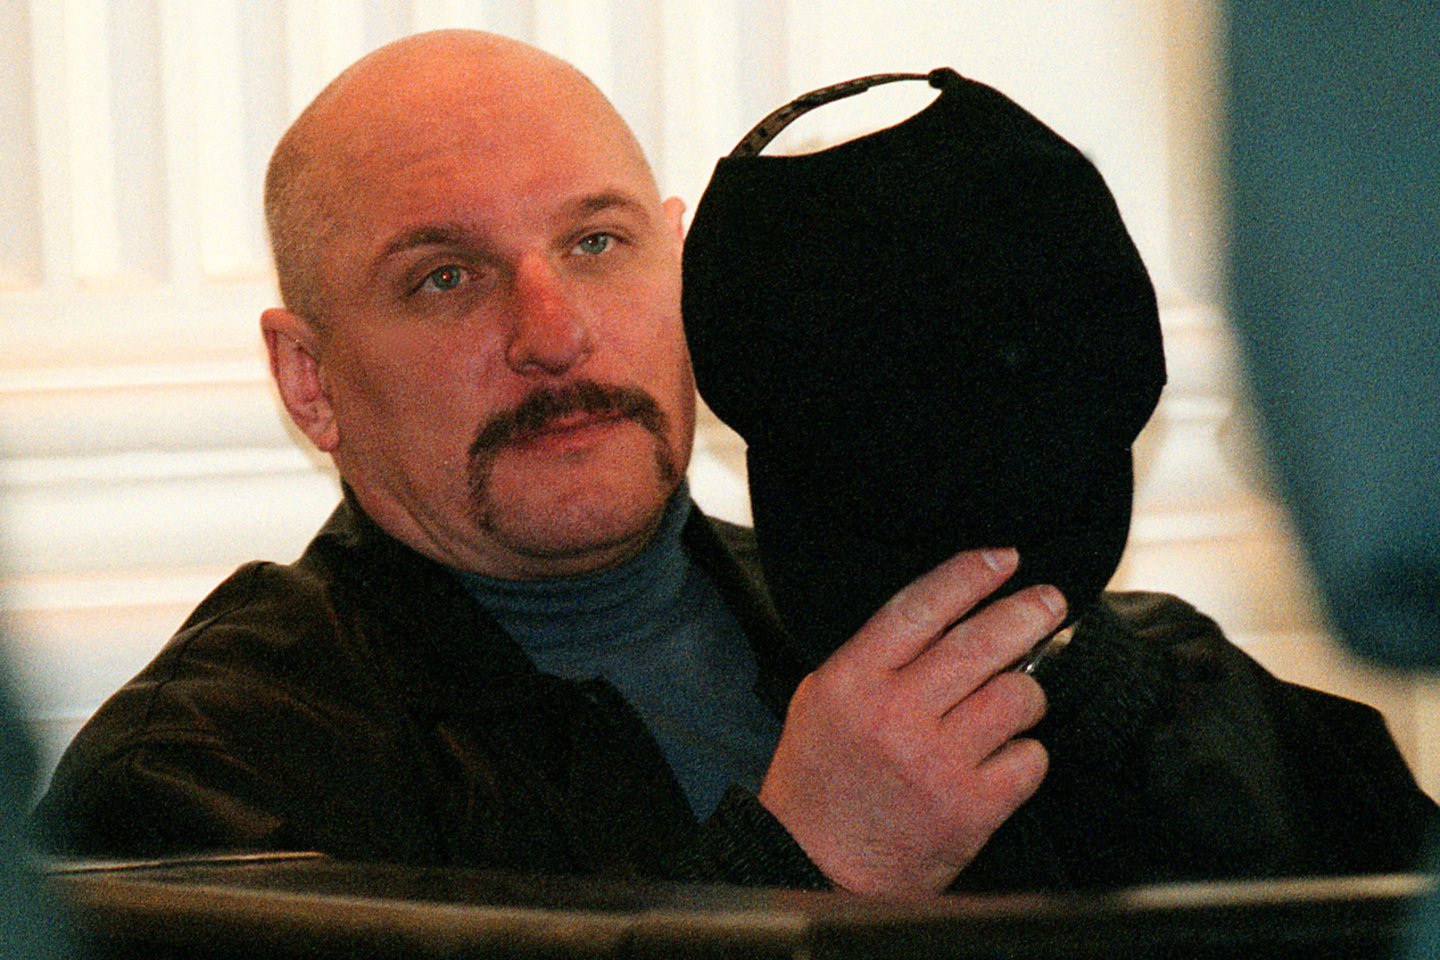  Liūdnai pagarsėjęs "Vilniaus bomberis" lieka nuteistas iki gyvos galvos, bausmė jam nesušvelninta. <br> R. Jurgaičio nuotr. 